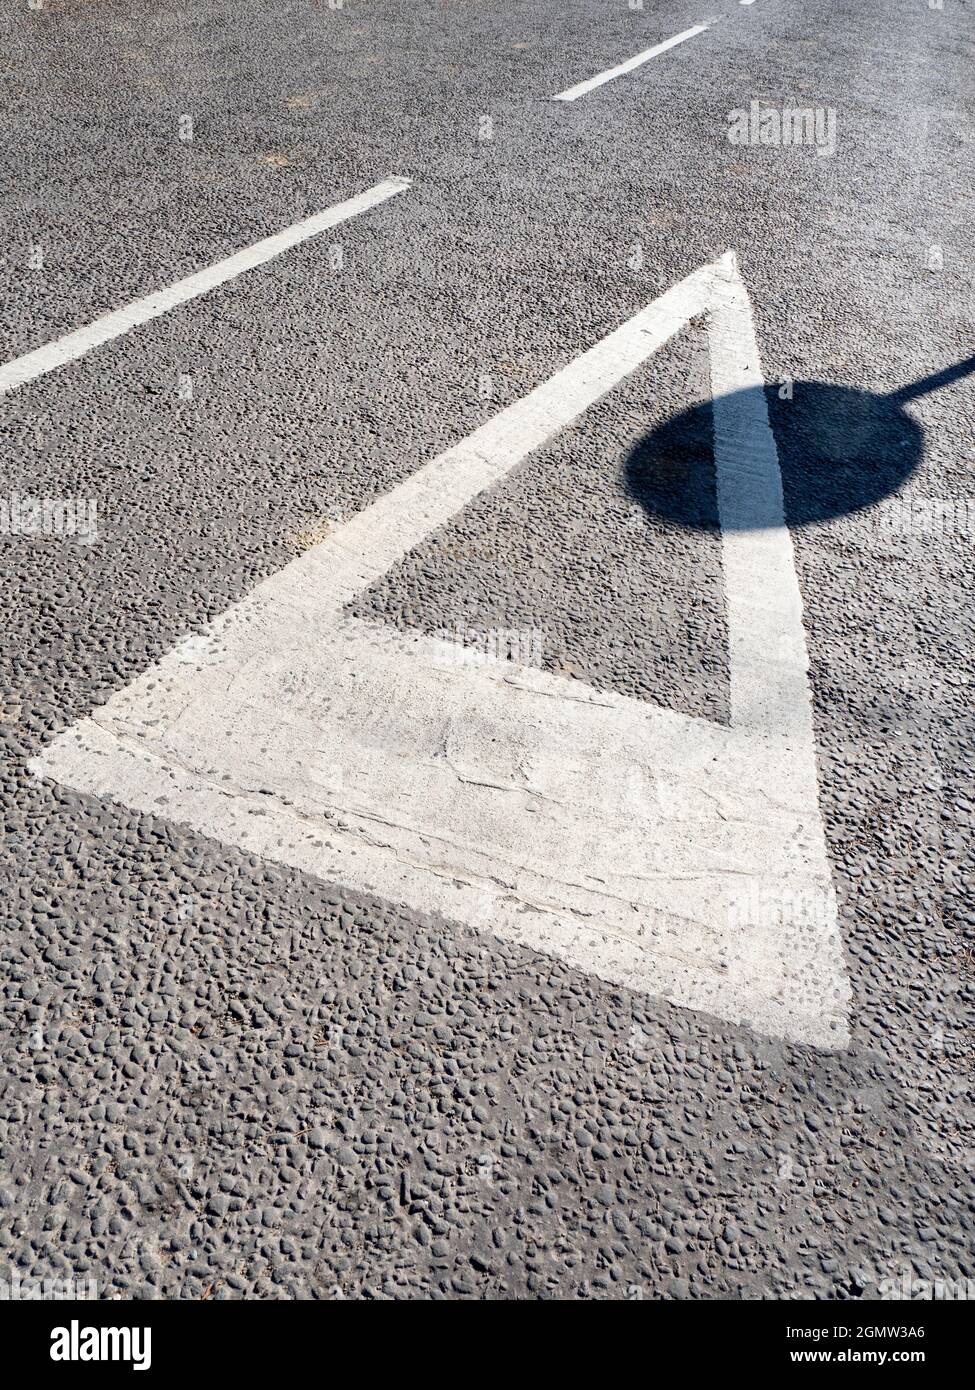 Radley Village, Oxfordshire, England - 5. März 2021; Keine Menschen im Blick. Reine Geometrie - Straßenschilder und der Schatten eines verflechten sich auf einer Fahrspur in h Stockfoto